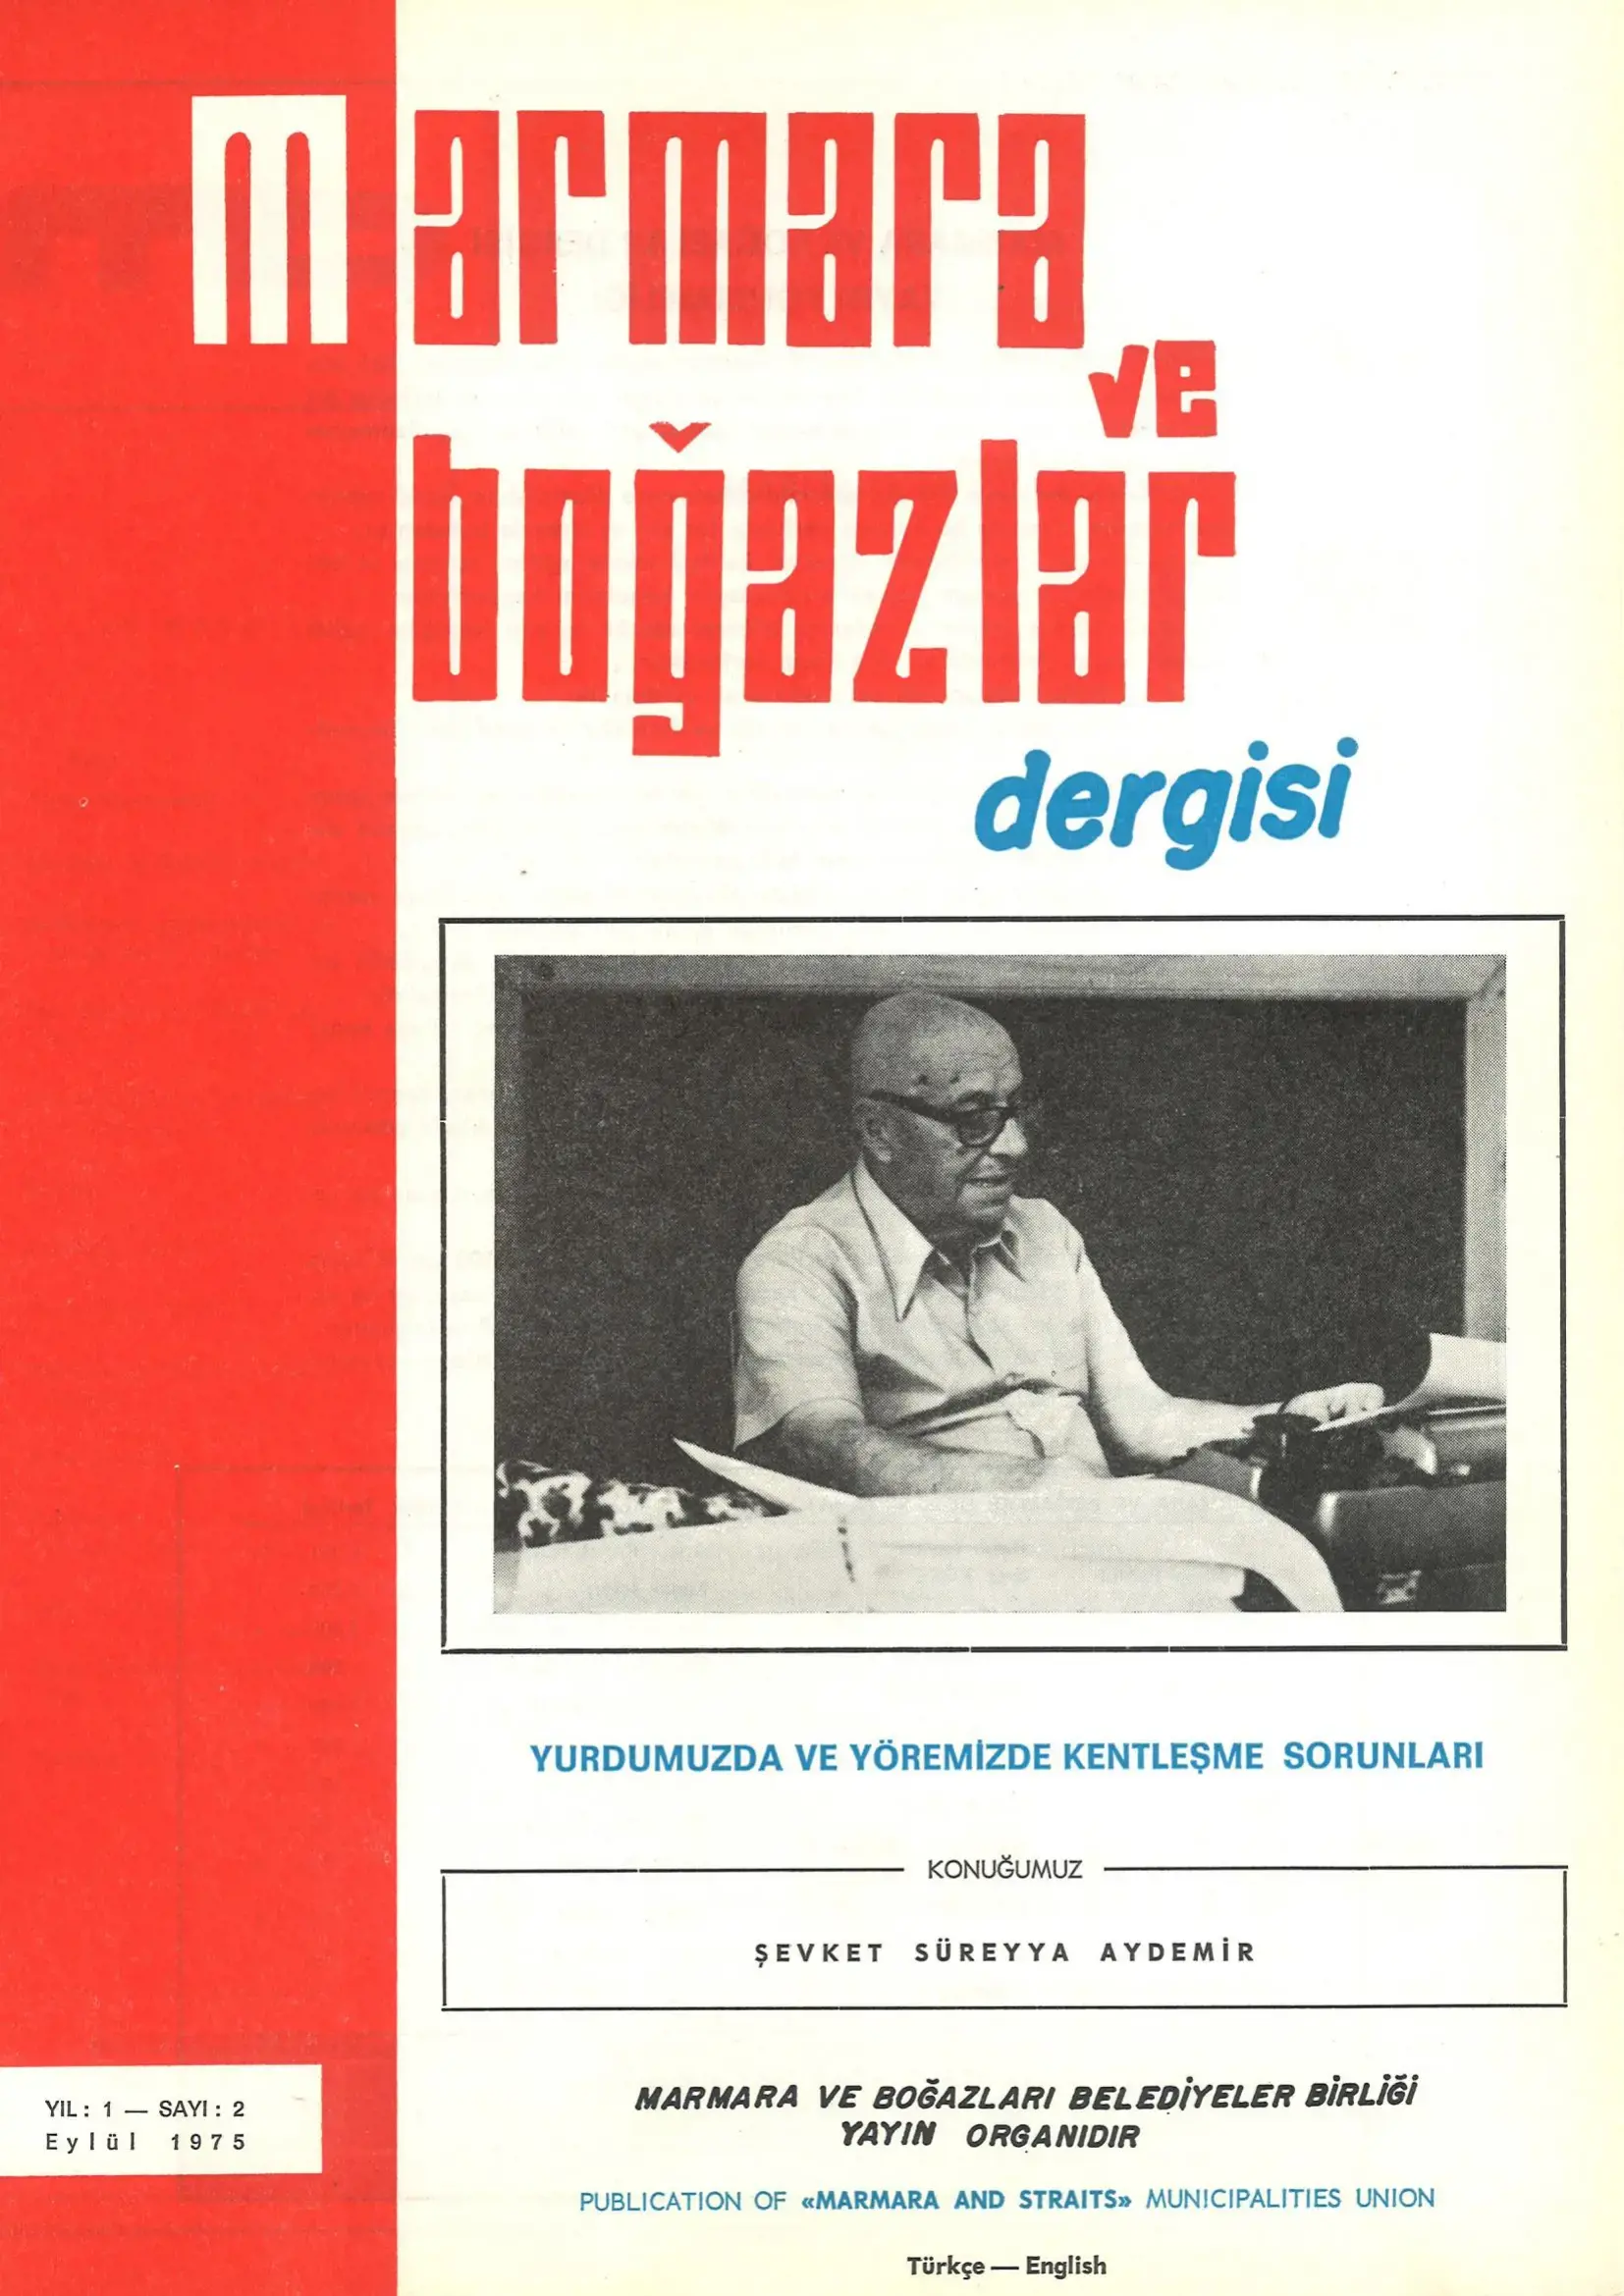 Marmara ve Boğazlar Dergisi - Eylül 1975
                                    Resmi